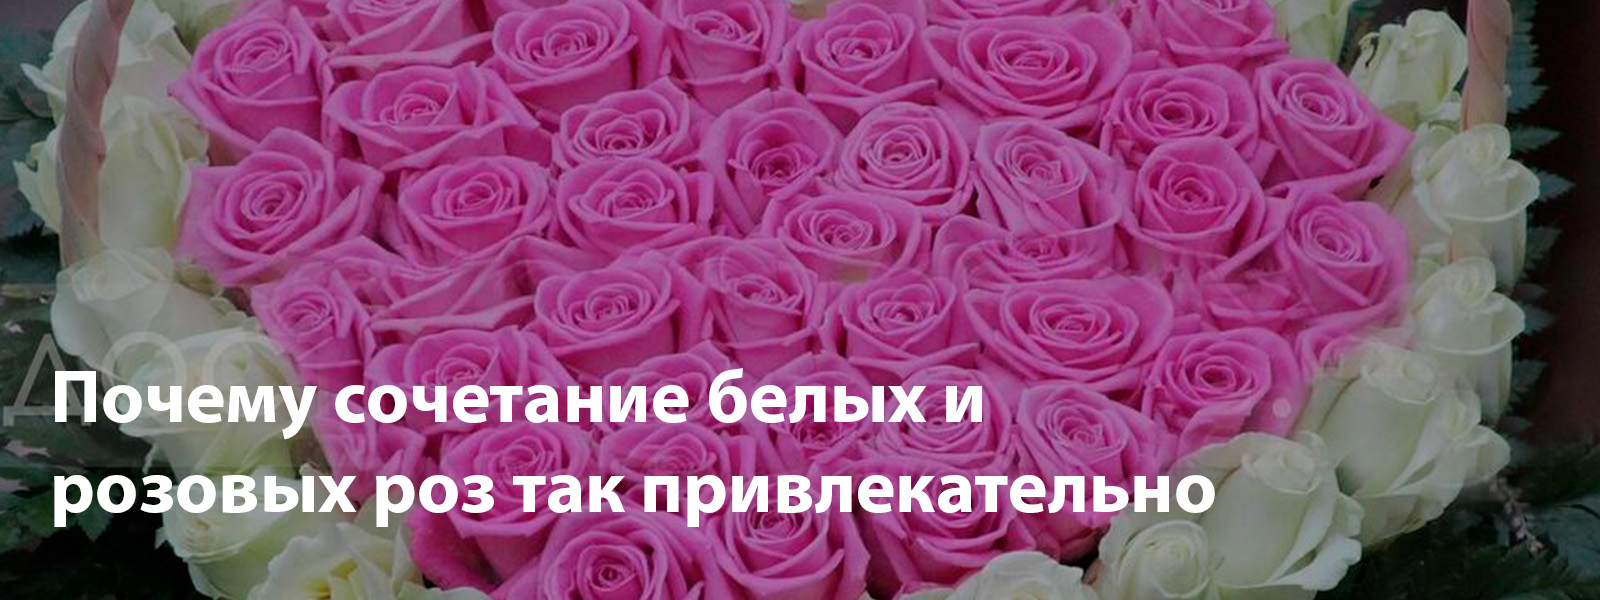 Почему сочетание белых и розовых роз так привлекательно